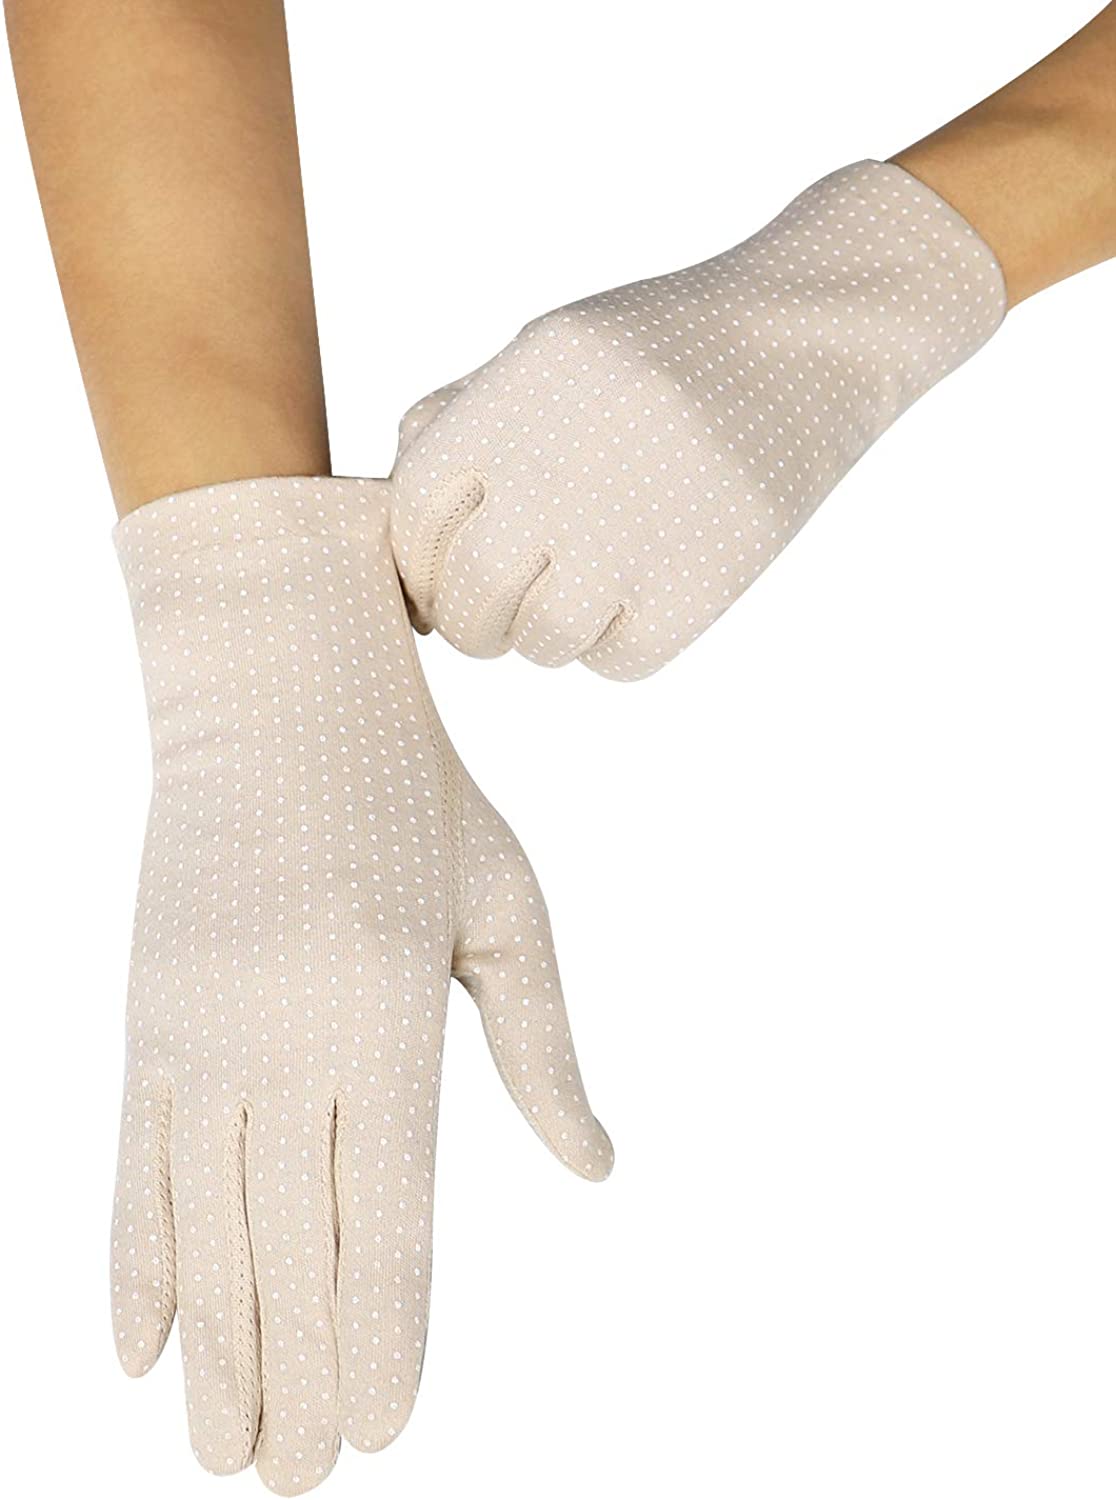 Lovful Womens Sunscreen Gloves UV Sun Lightweight Cotton Touch